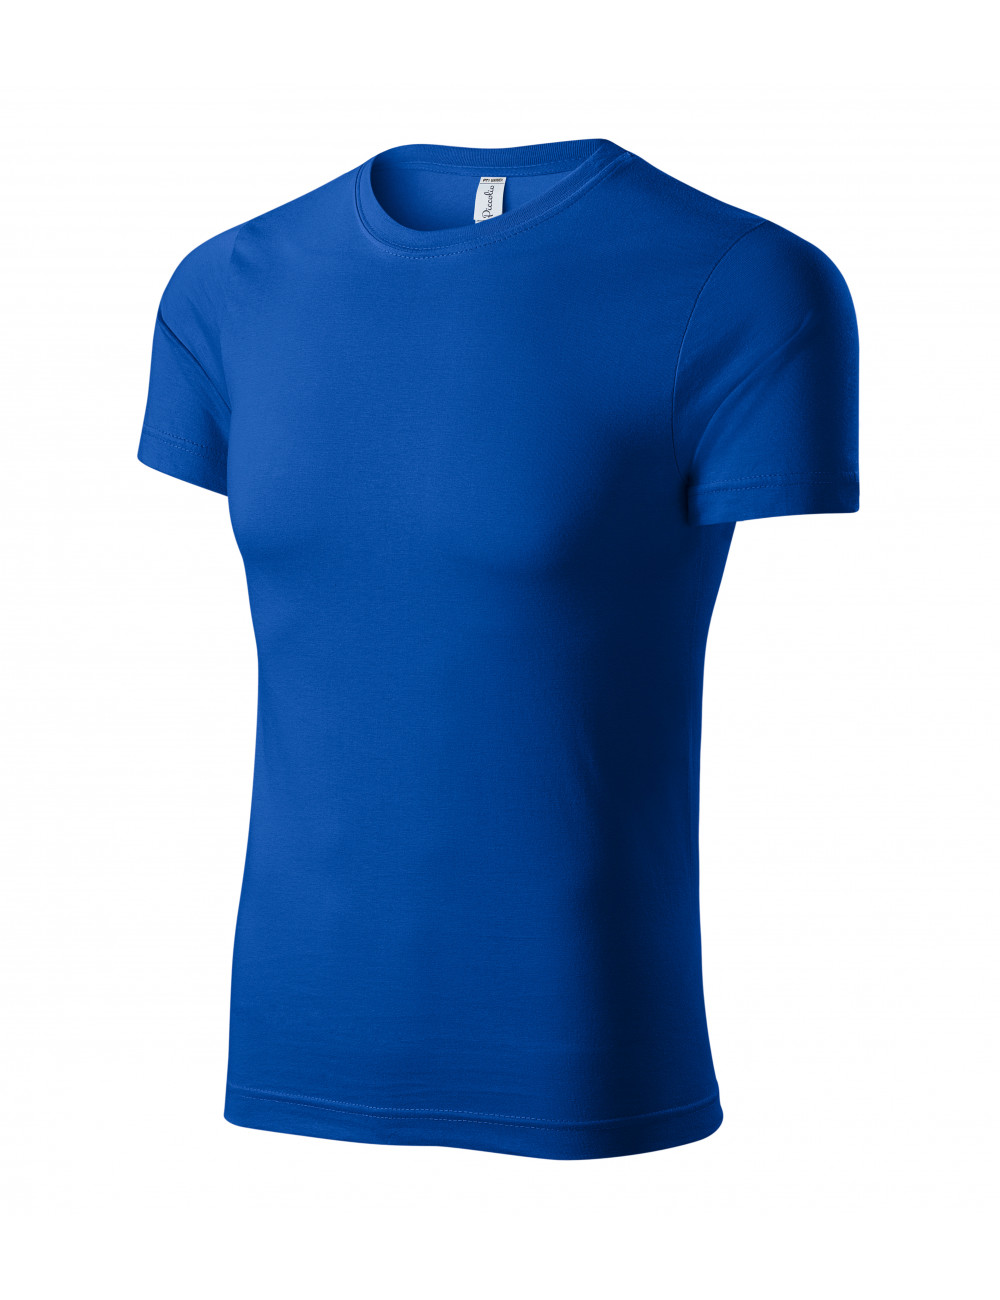 Unisex-Parade-T-Shirt p71 kornblumenblau Adler Piccolio